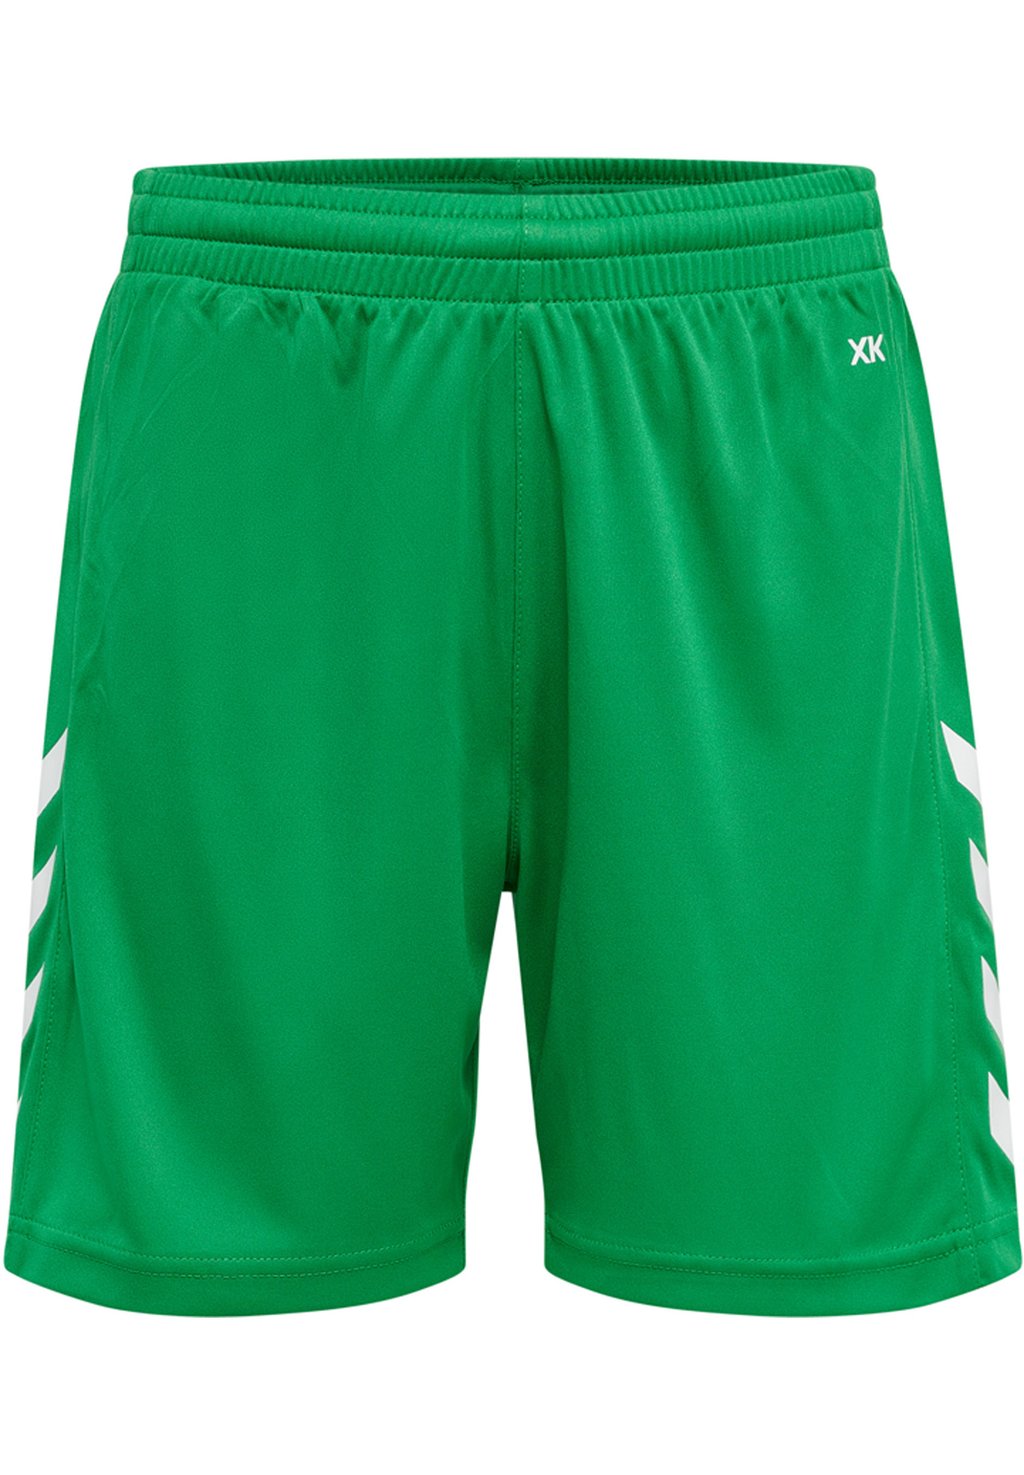 Спортивные шорты CORE XK POLY Hummel, цвет neon green спортивные шорты core xk poly hummel цвет acai